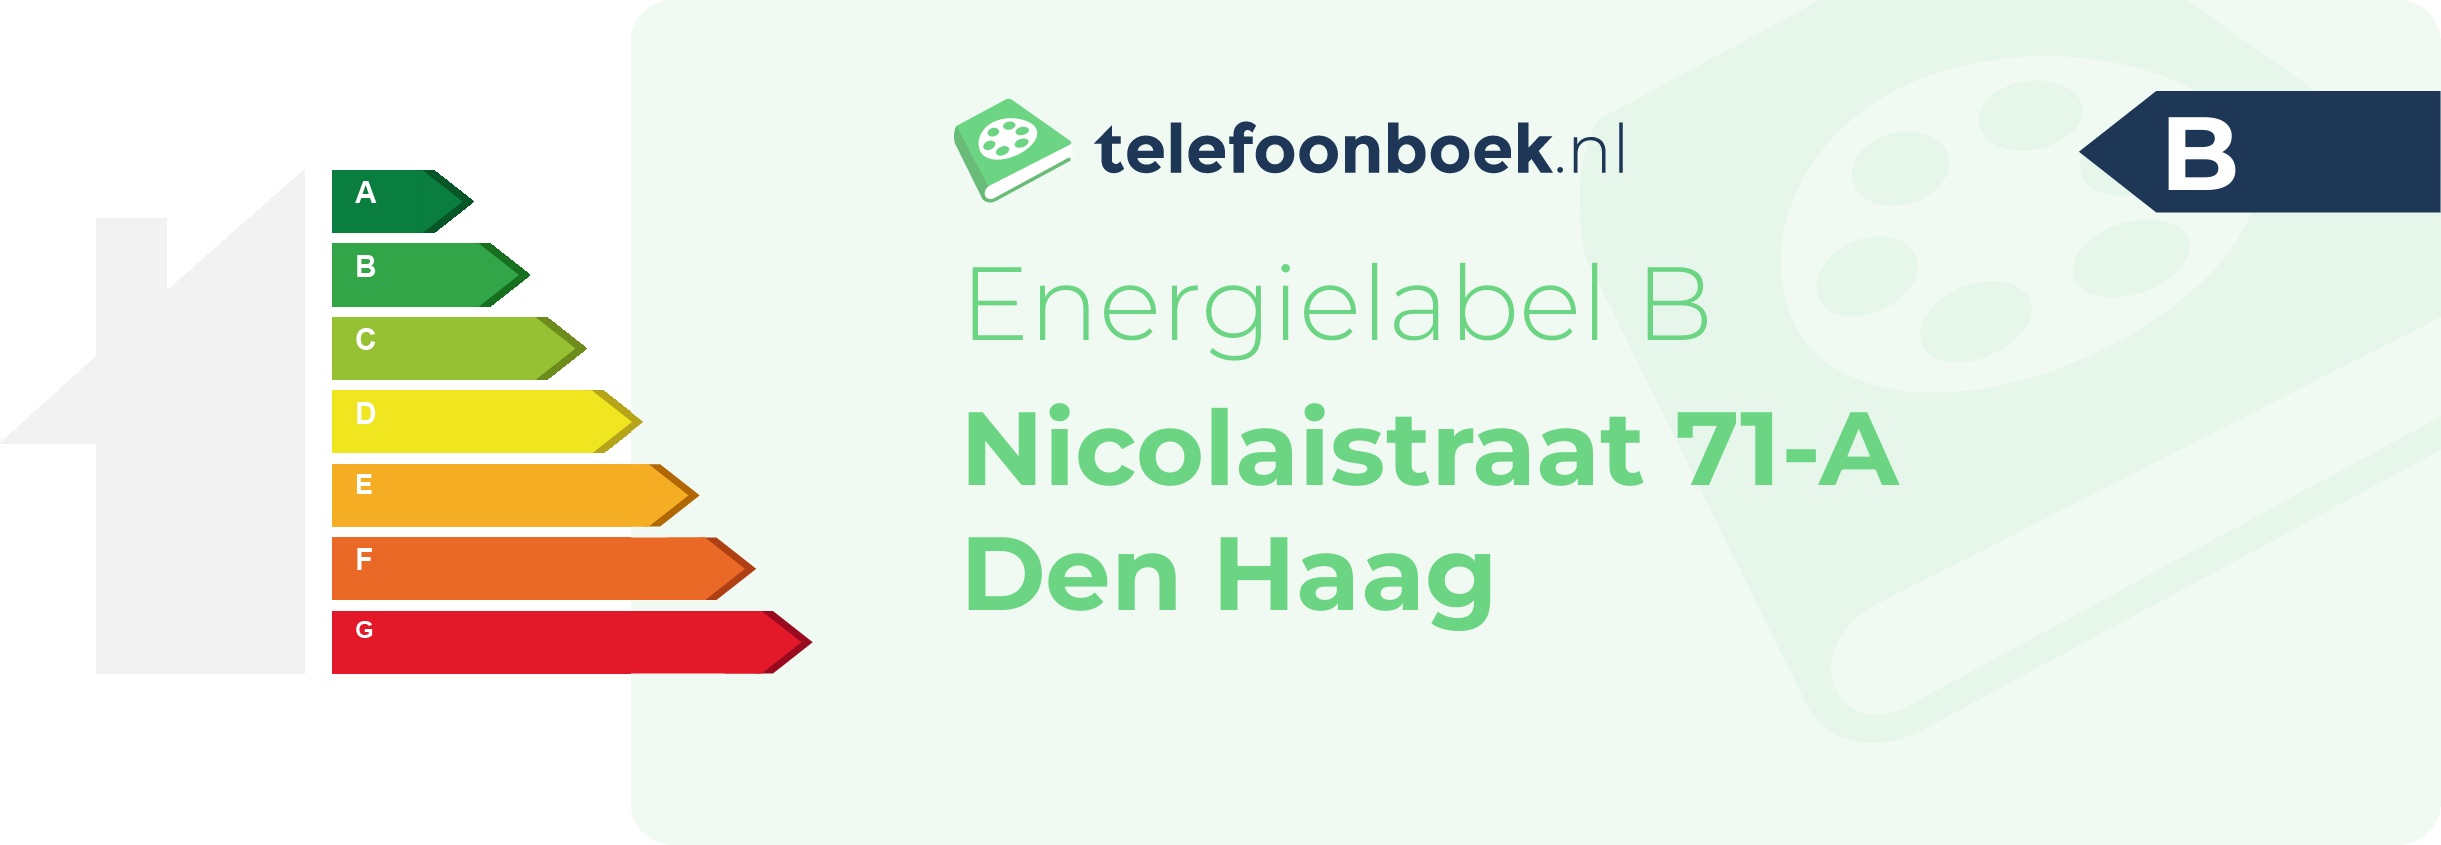 Energielabel Nicolaistraat 71-A Den Haag